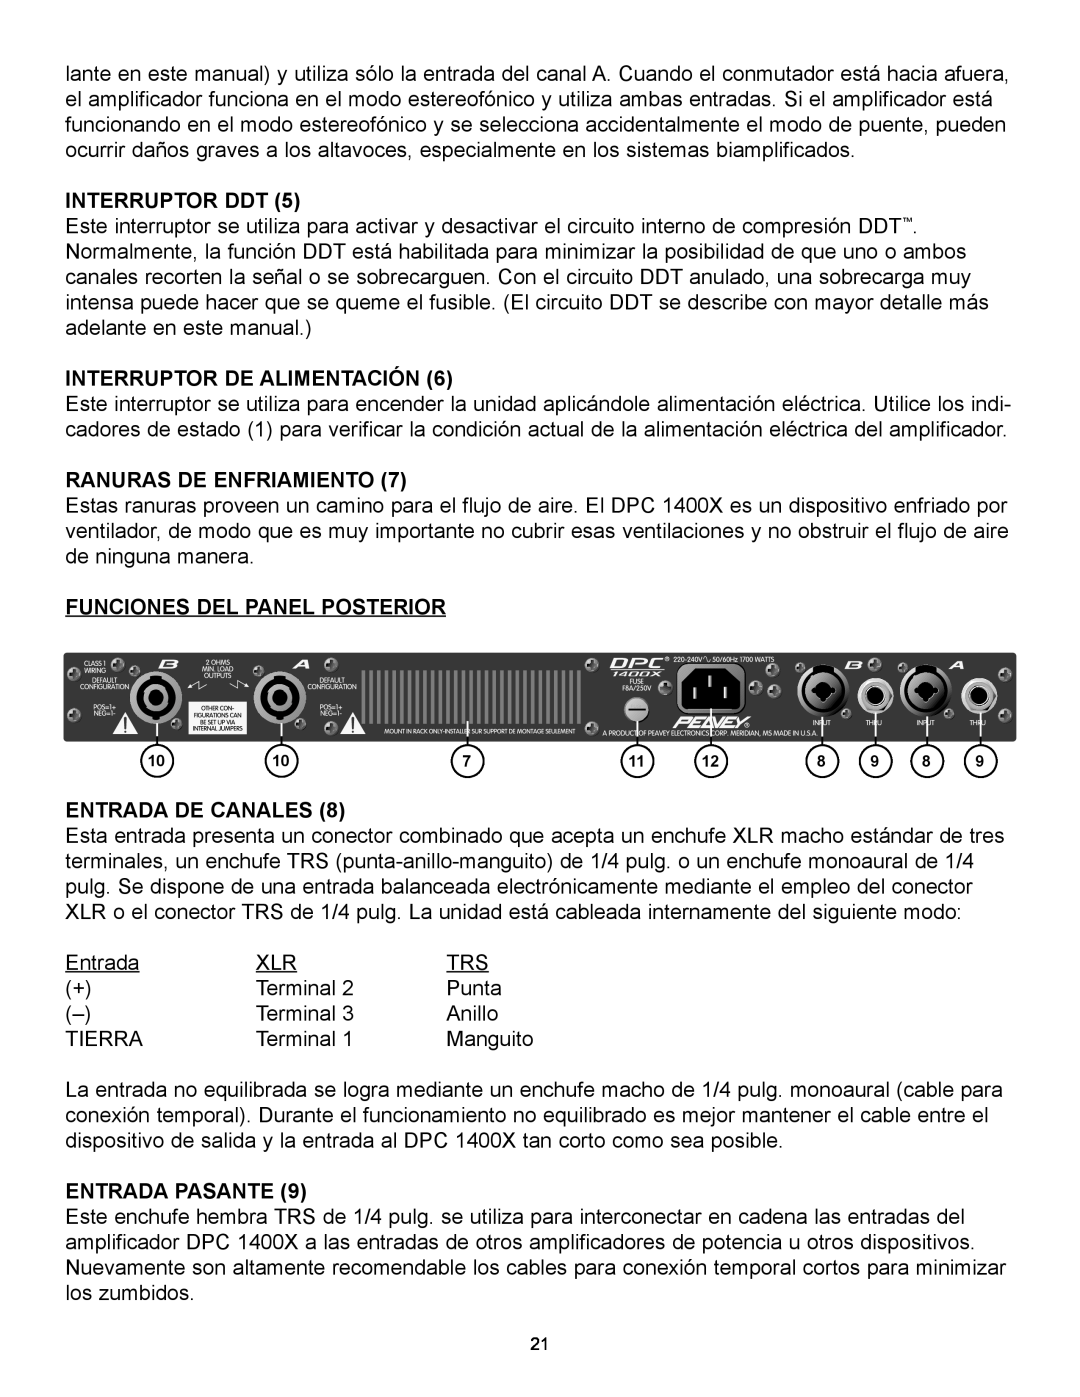 Peavey 1400X Interruptor Ddt, Interruptor De Alimentación, Ranuras De Enfriamiento, Funciones Del Panel Posterior 